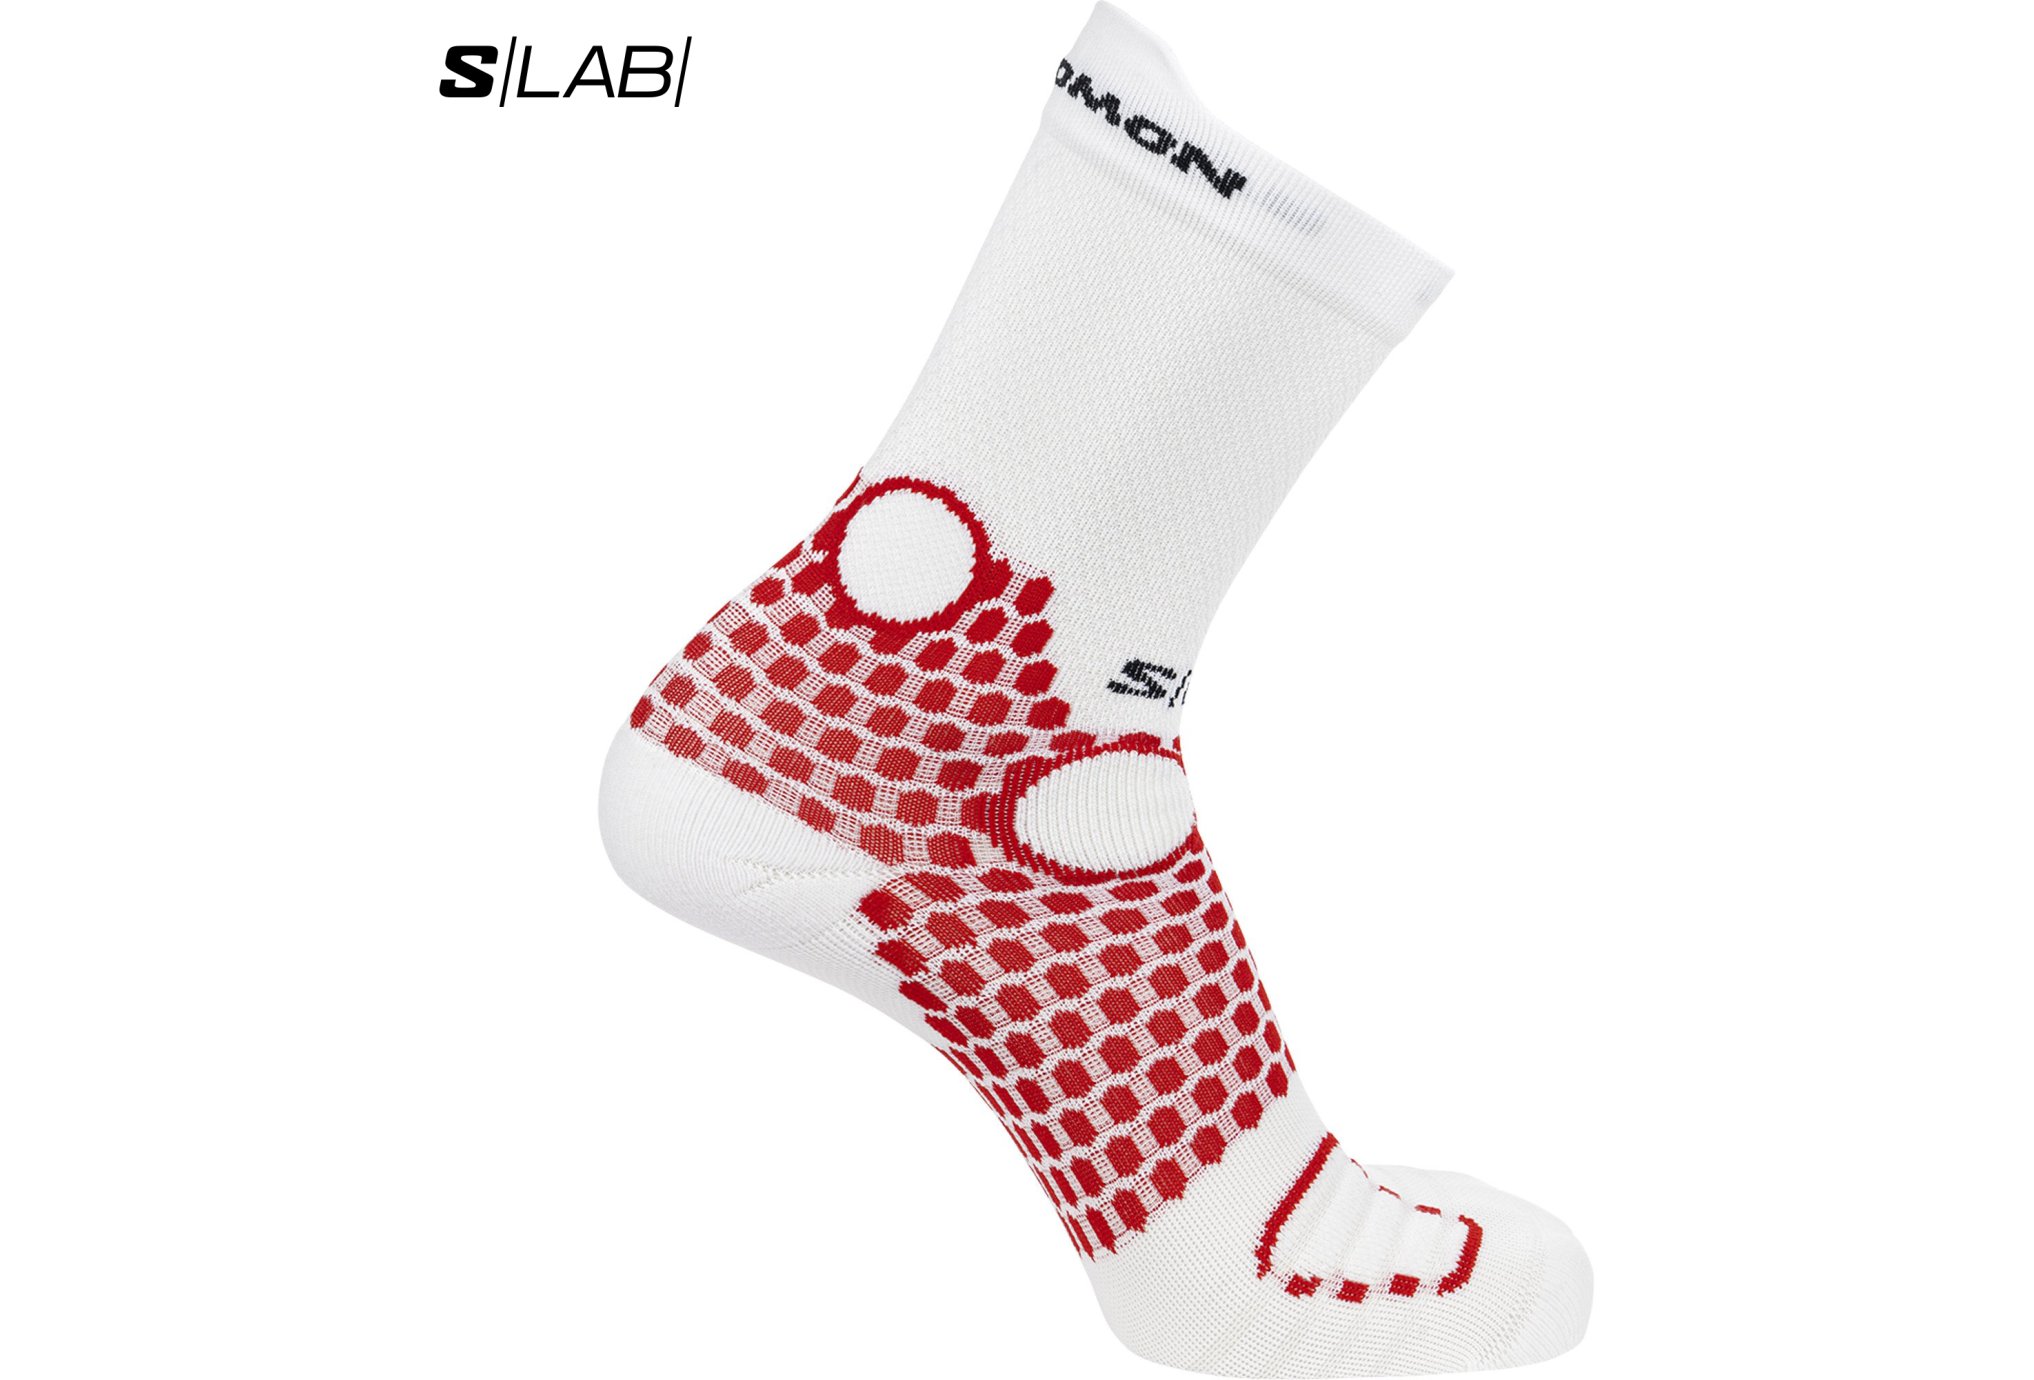 S/Lab Pulse Ankle - Chaussettes unisexes